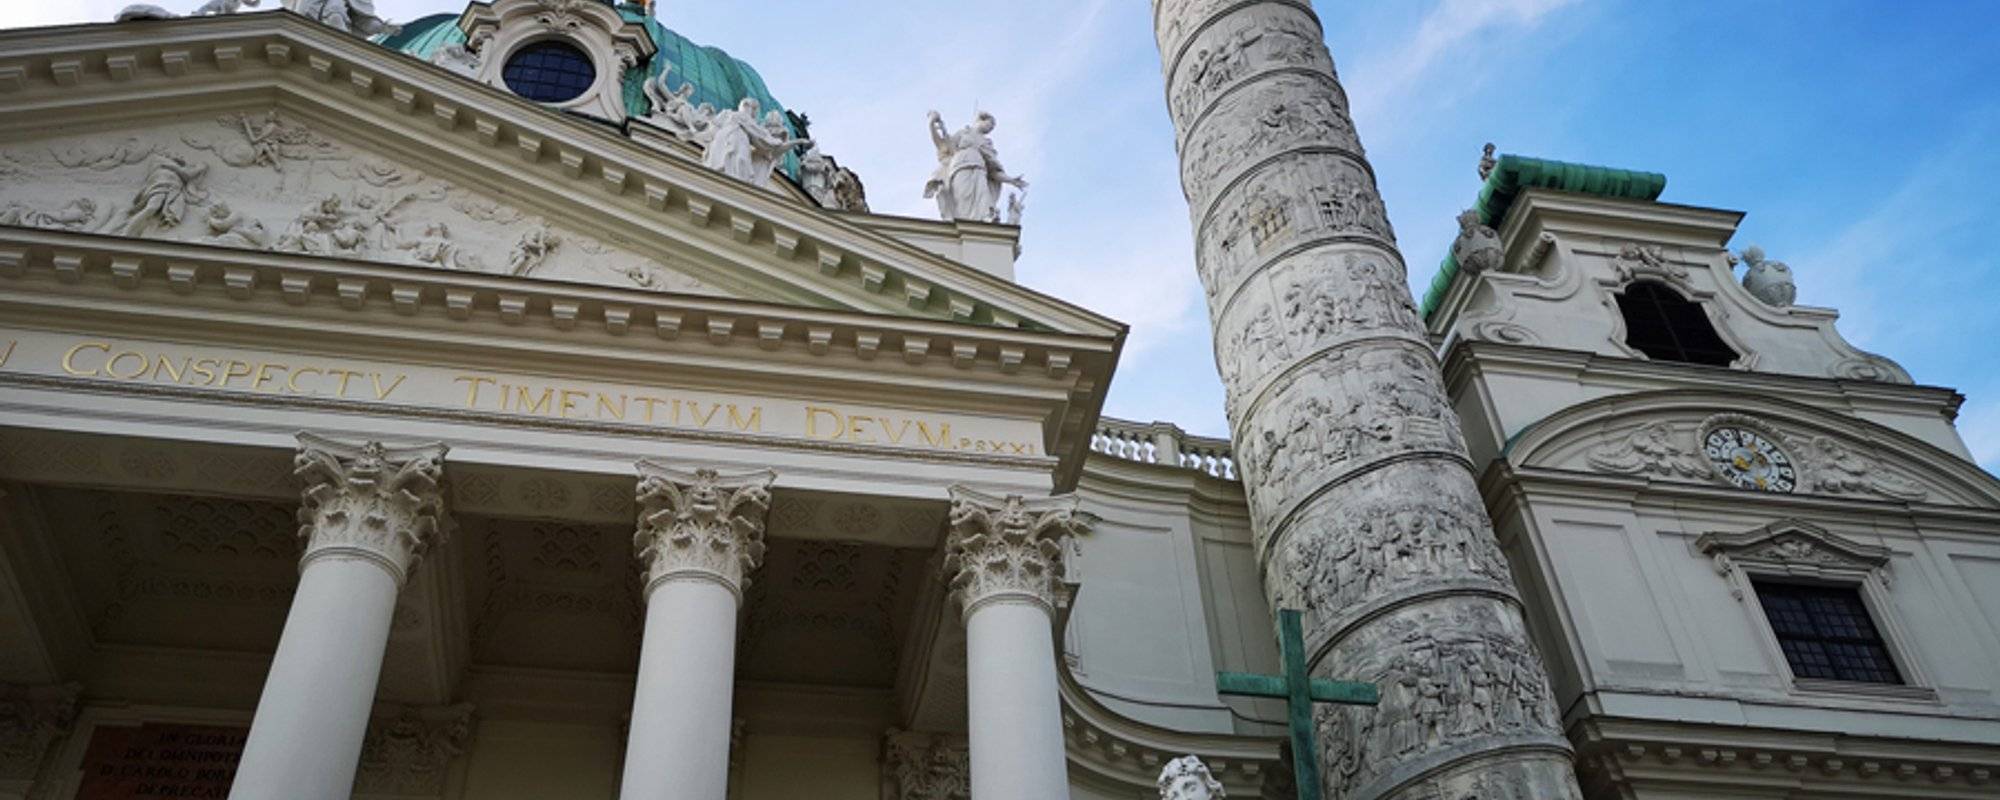 Karlskirche in Wien (mit Video)  //  St. Charles' Church in Vienna (Video inside)